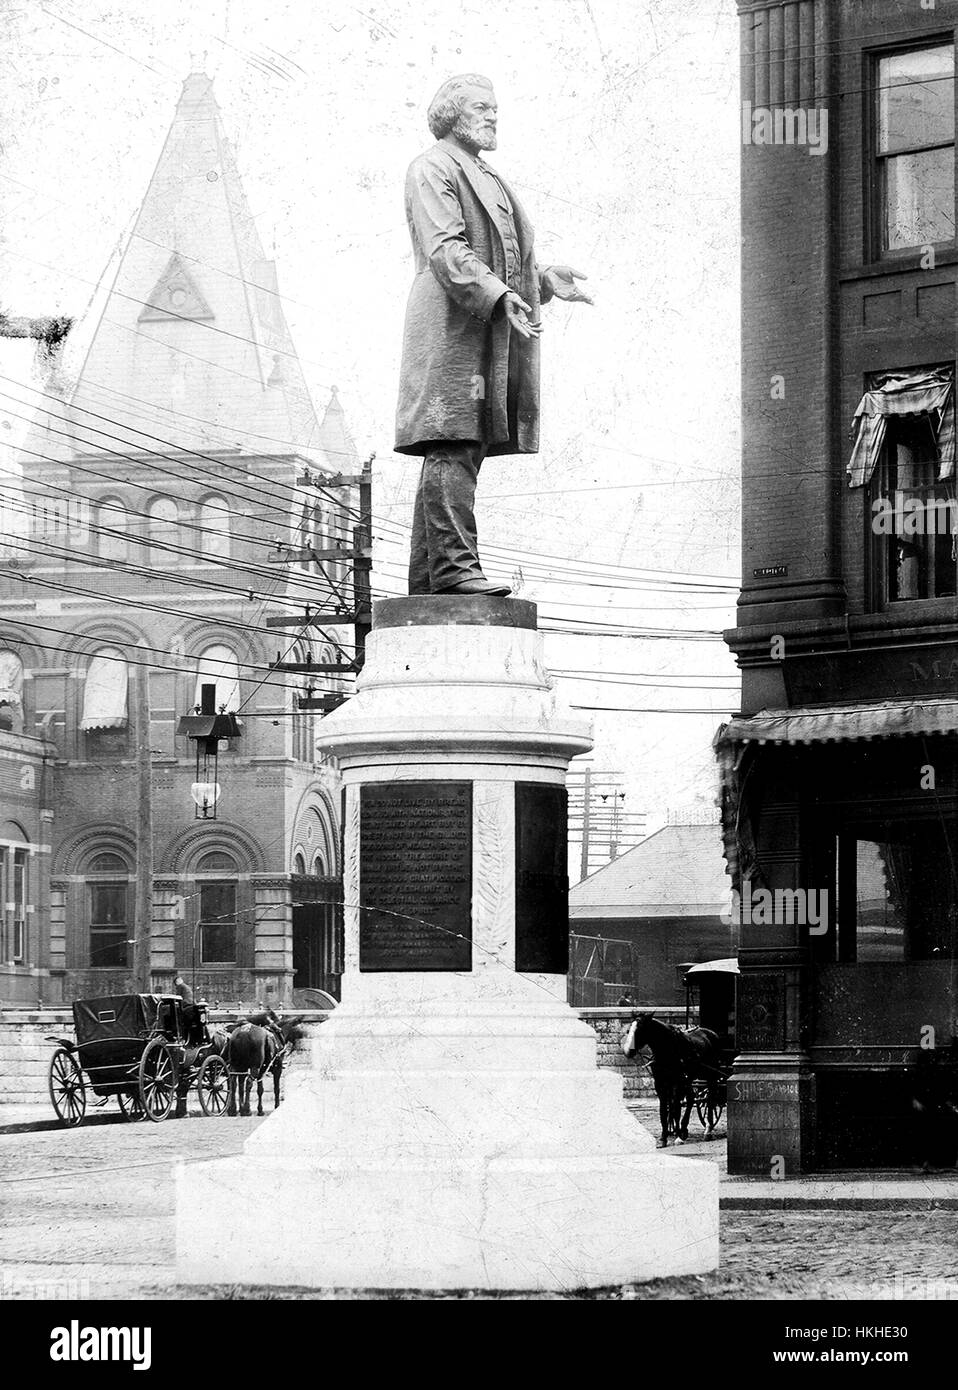 Ein Denkmal um zu Ehren von Frederick Douglass, eine Statue von Douglass steht auf einem Steinsockel, die mehrere Plaketten Text, Mauerwerk Gebäude, Straßen, enthält und Pferdekutschen sehen im Hintergrund, Douglass wurde einem entflohenen Sklaven, ein prominenter Abolitionisten wurde, er war bekannt für seine rednerischen Fähigkeiten und seine Unterstützung der gleichen Rechte für alle Menschen unabhängig von Rasse , Nationalität oder Geschlecht, diese Statue war das erste in den Vereinigten Staaten, eine Afrika-amerikanischer Staatsbürger, Rochester, New York, 1900 zu Ehren. Von der New York Public Library. Stockfoto